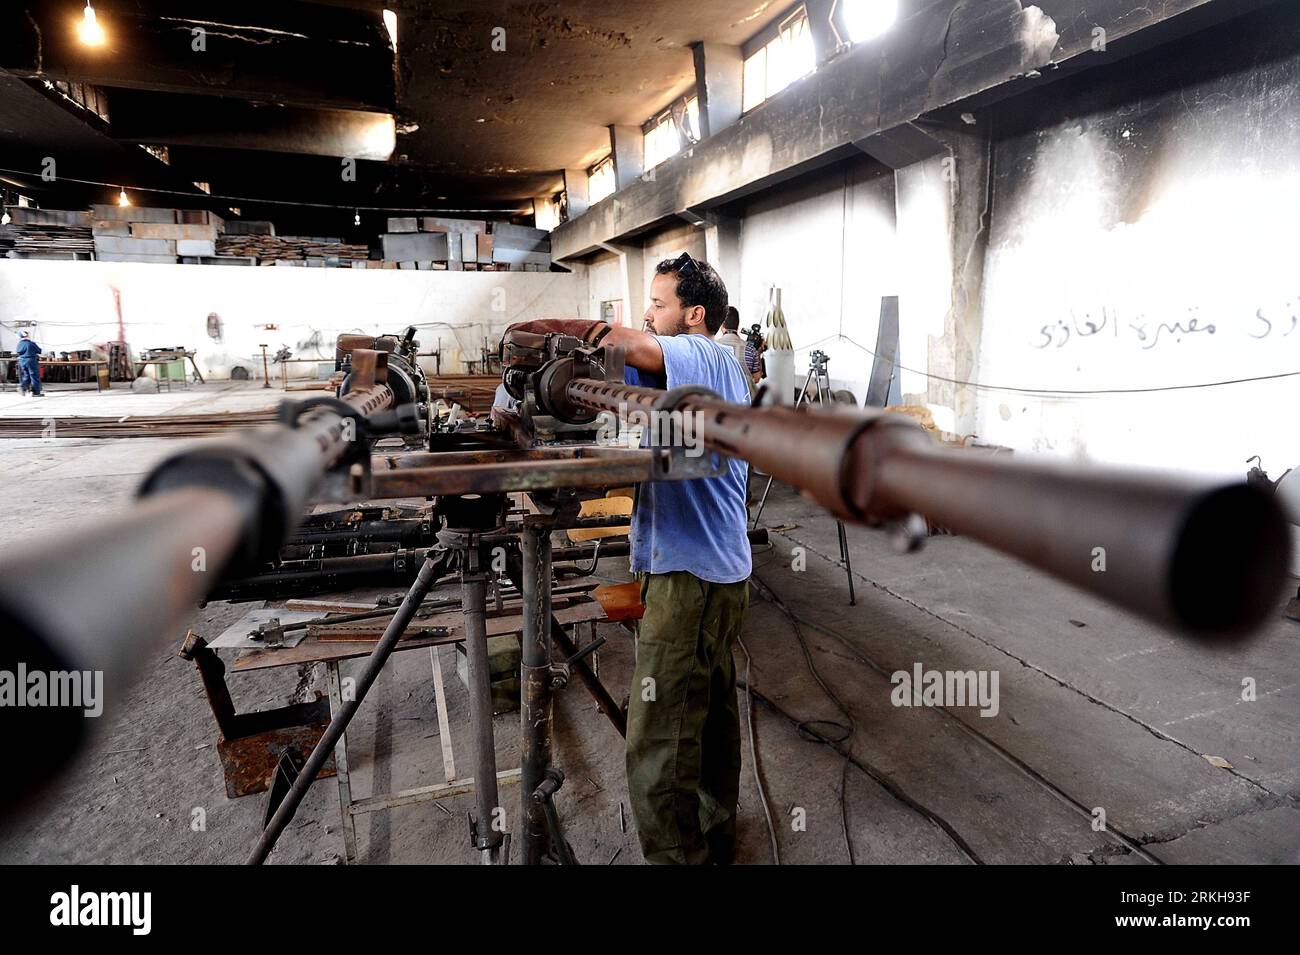 Bildnummer: 55740827  Datum: 13.08.2011  Copyright: imago/Xinhua (110813) -- BENGHAZI, Aug. 13, 2011 (Xinhua) -- A man works at a local plant maintaining 14.5 mm guns for battles between rebel fighters and Gaddafi forces in Benghazi, Libya, Aug. 13, 2011. (Xinhua/Mohammed Omer) (zw) LIBYA-BENGHAZI-WEAPONS MAINTENANCE FACILITY PUBLICATIONxNOTxINxCHN Gesellschaft Politik Rebellen Aufständische Waffen Fabrik Wartung Fotostory Waffenschmiede xda x0x premiumd 2011 quer     Bildnummer 55740827 Date 13 08 2011 Copyright Imago XINHUA  Benghazi Aug 13 2011 XINHUA a Man Works AT a Local plant maintainin Stock Photo